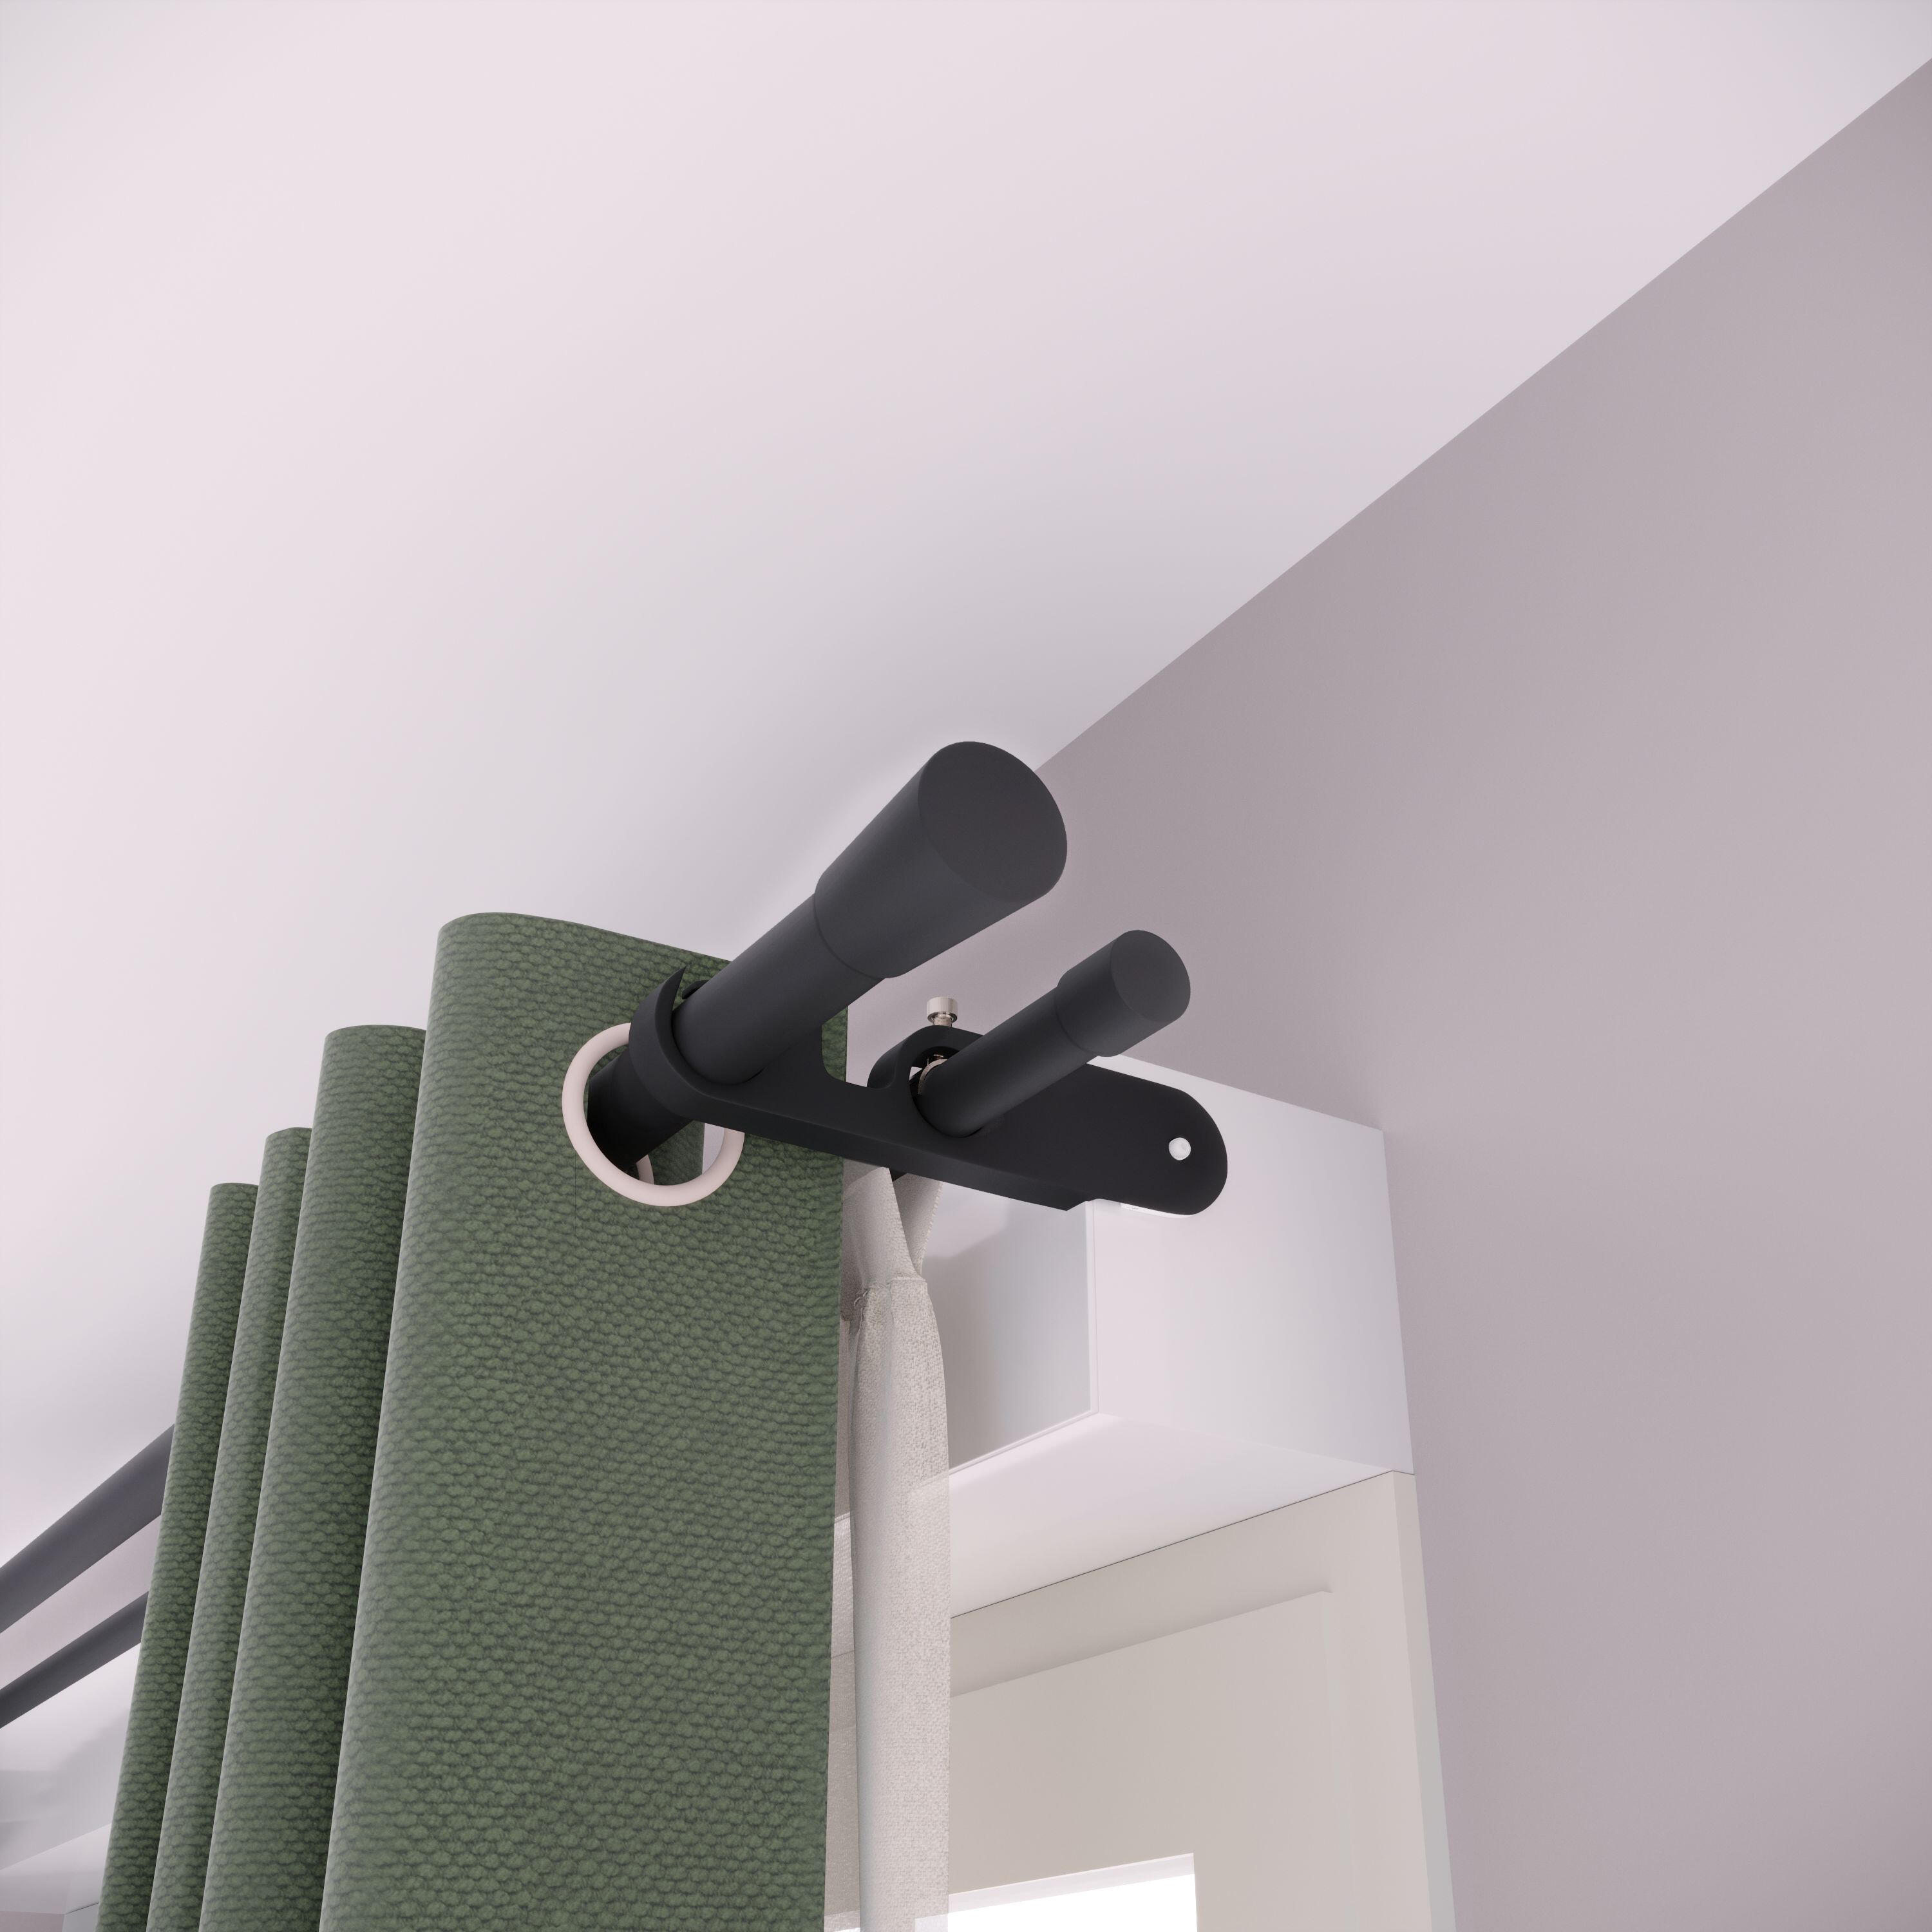 Barra-riel titanio mate 20mm - CORREDERAS CON RUEDAS - soporte a techo,riel  para cortinas,barras para cortinas